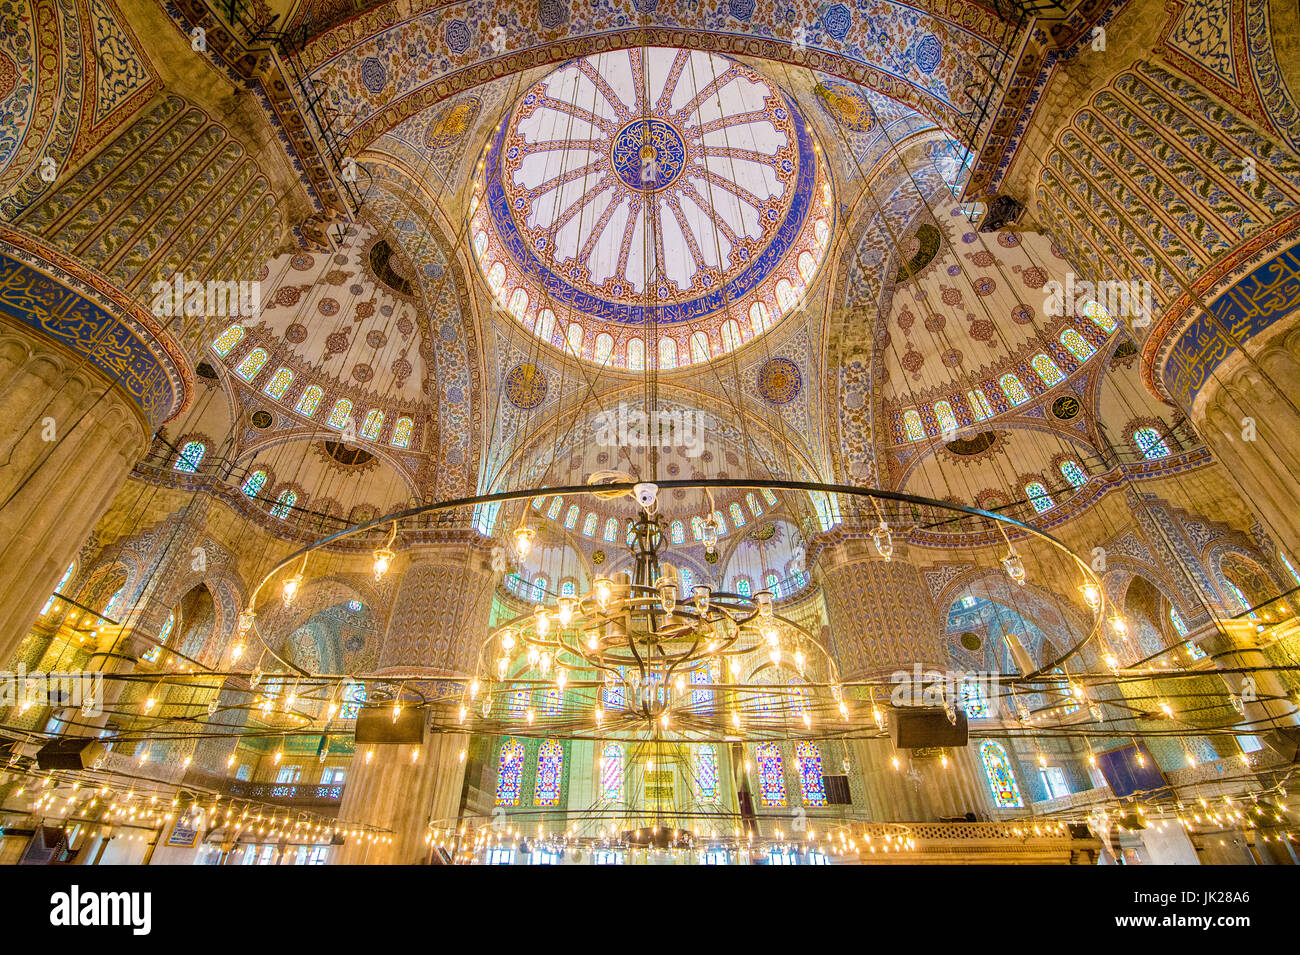 Das Innere der Sultan Ahmed Mosque (blaue Moschee) in Istanbul, Türkei. Stockfoto